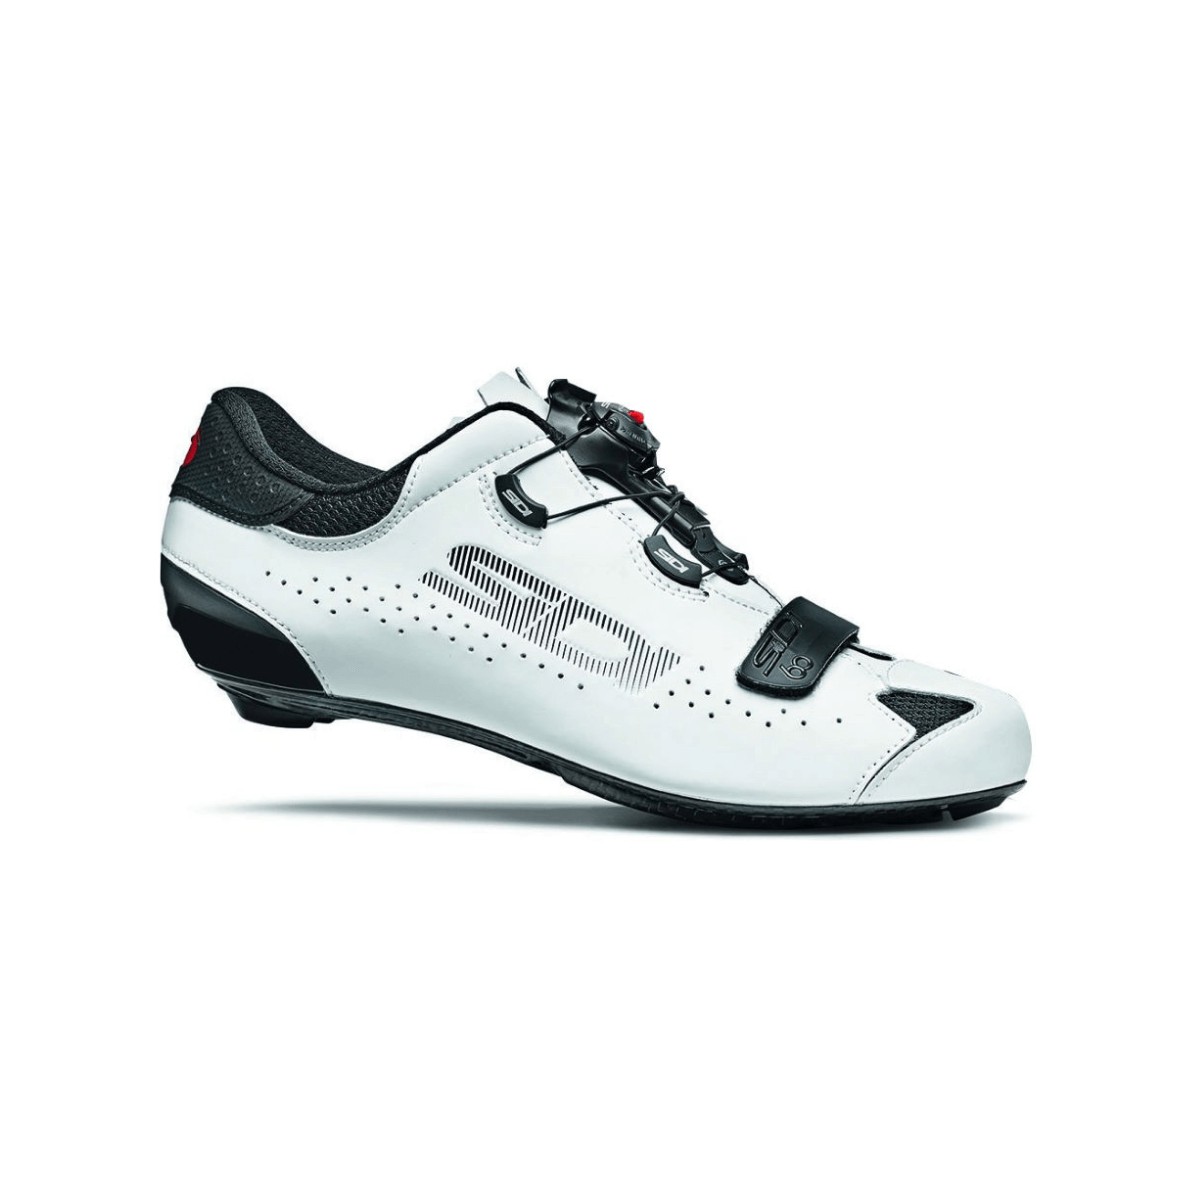 Sidi Sixty Schuhe Schwarz Weiß, Größe 46 - EUR